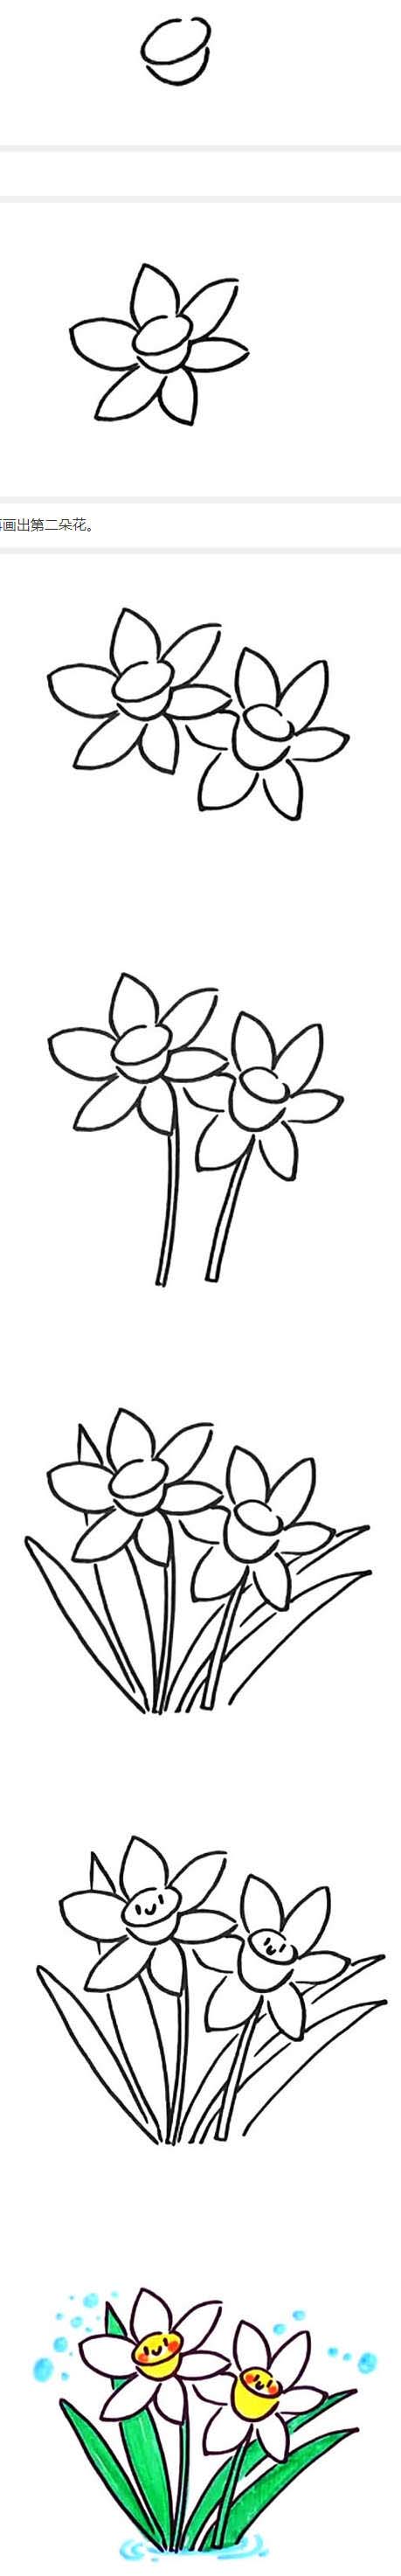 怎么画漂亮水仙花简笔画画法步骤教程简单好看